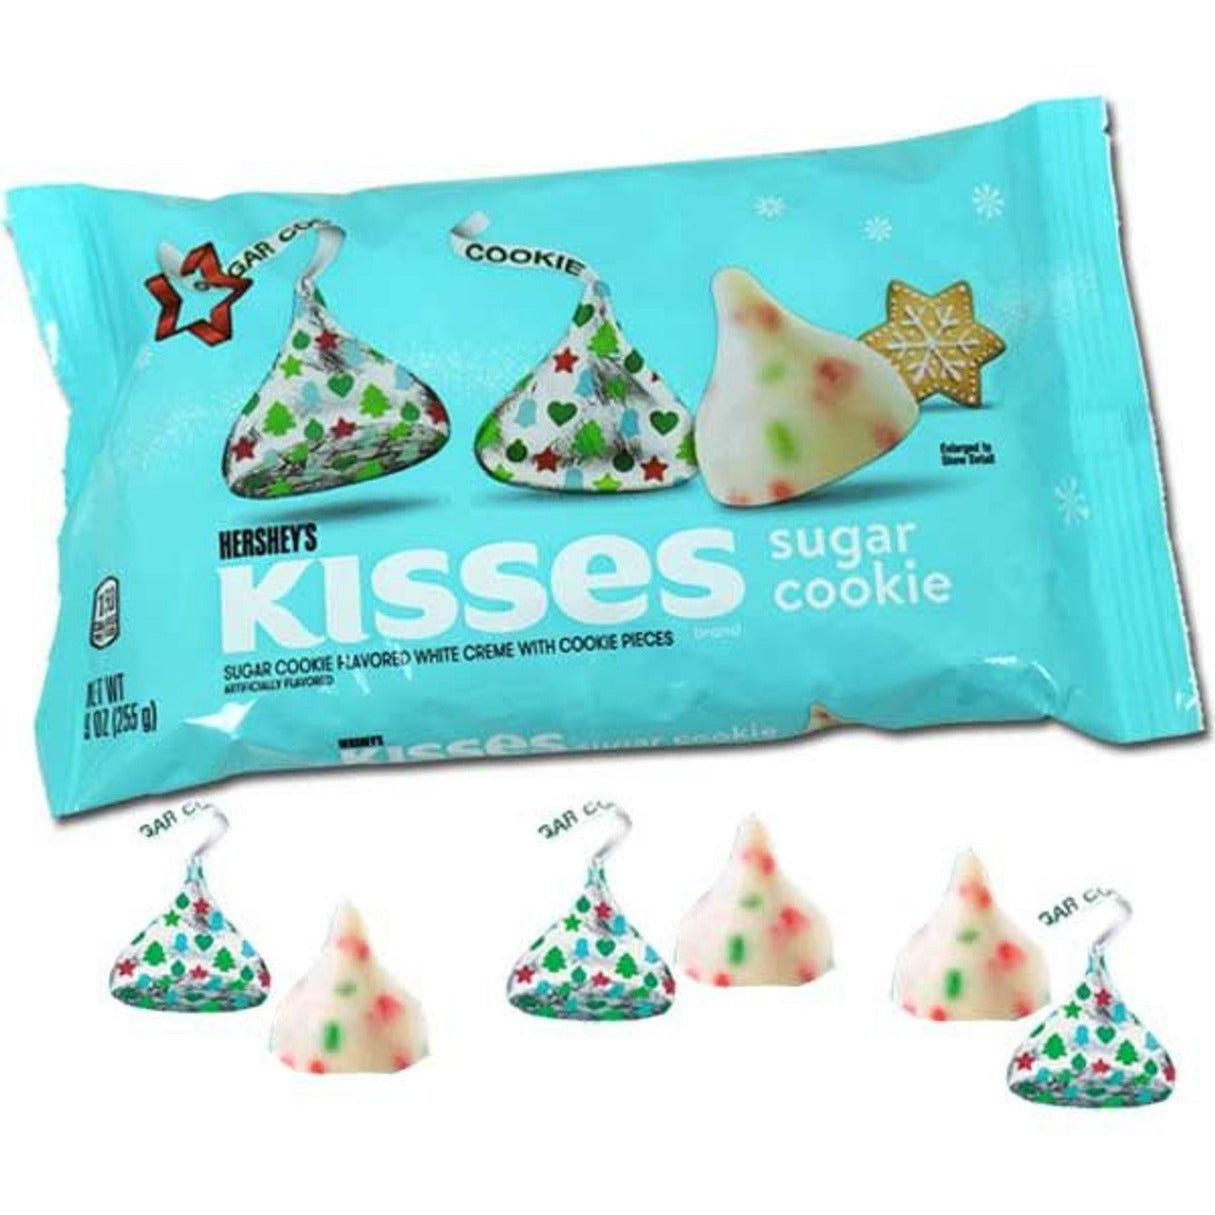 Hershey's Kisses Sugar Cookie 9oz - 12ct